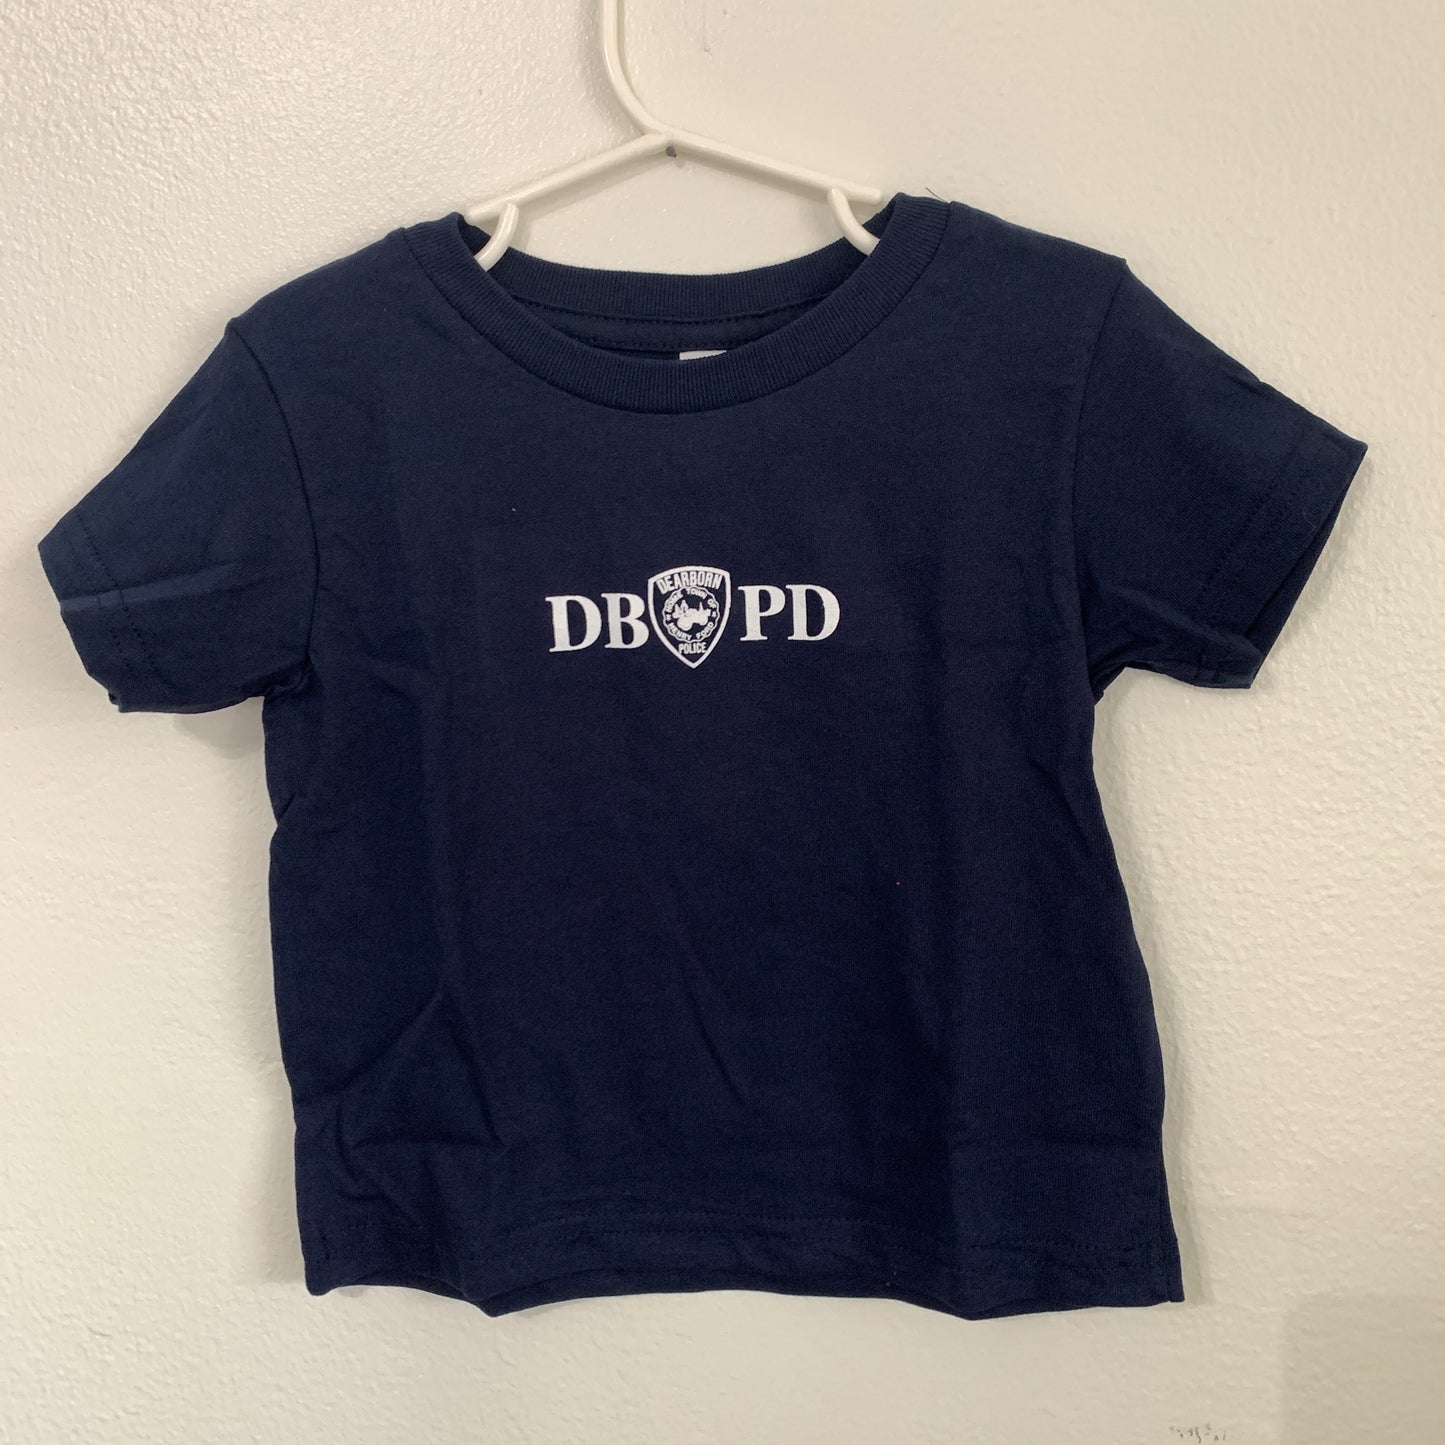 Toddler DBPD T Shirt (centered)